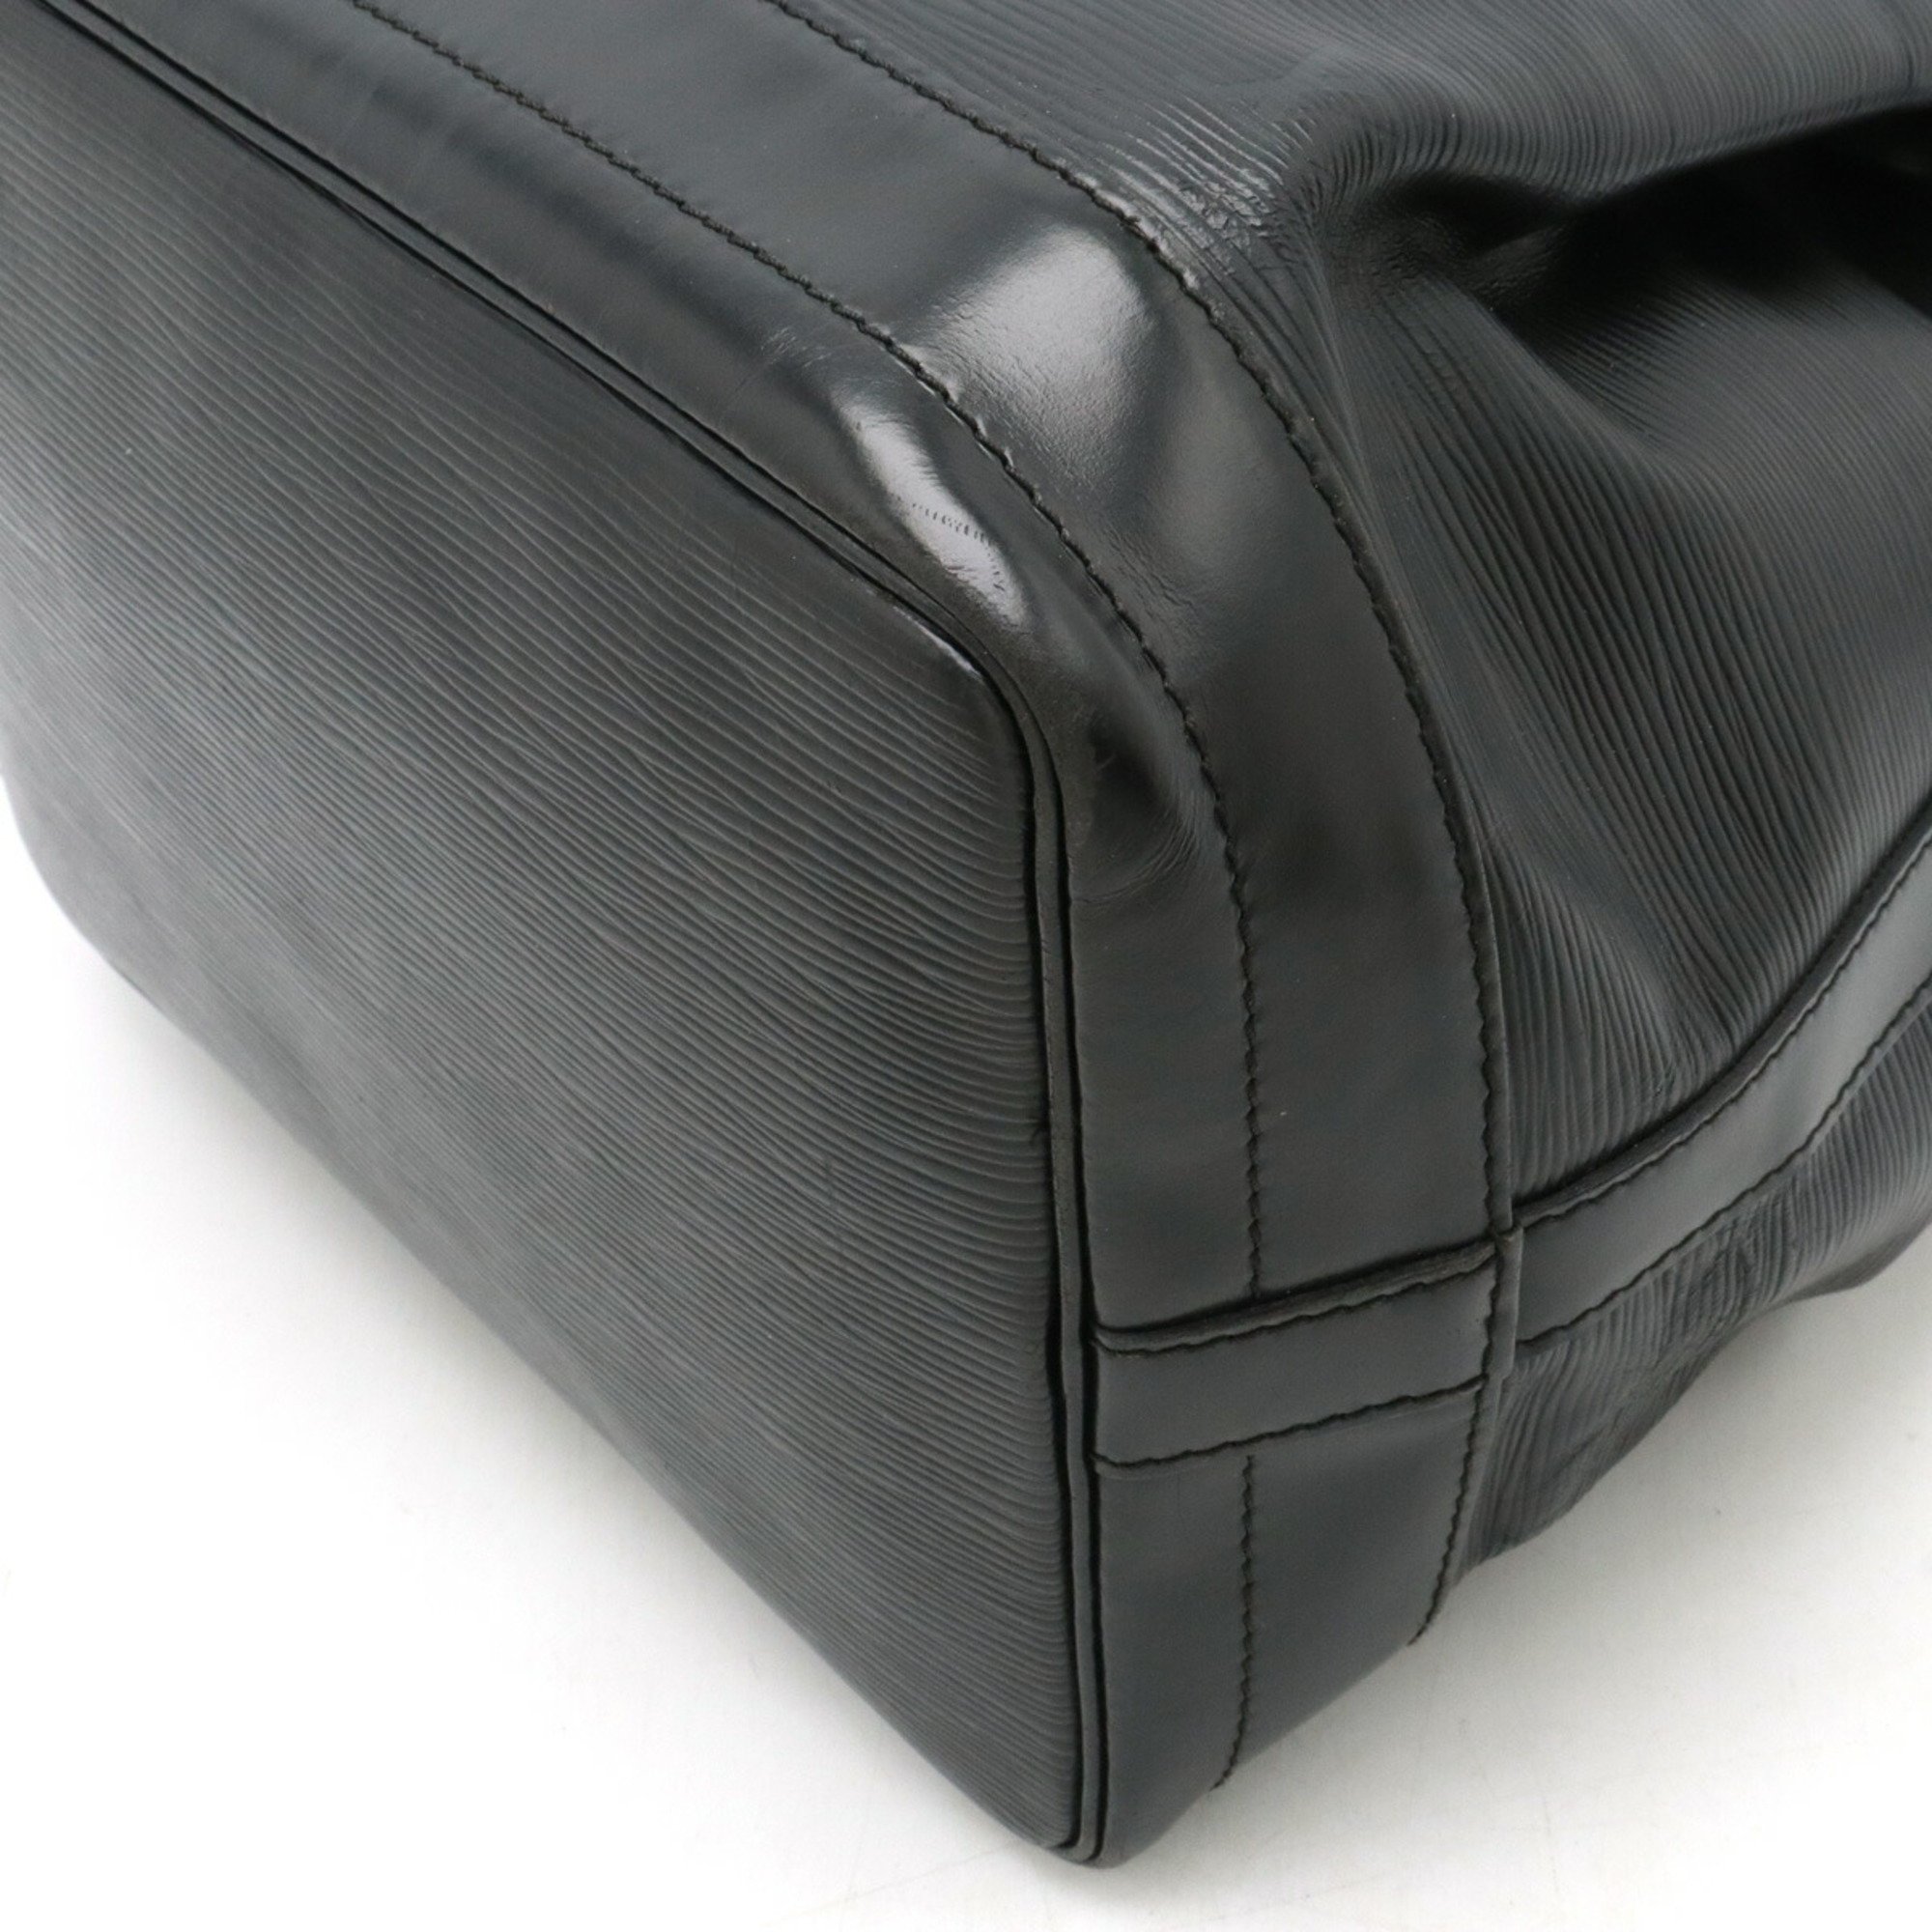 LOUIS VUITTON Epi Noe Shoulder Bag Leather Noir Black M59002